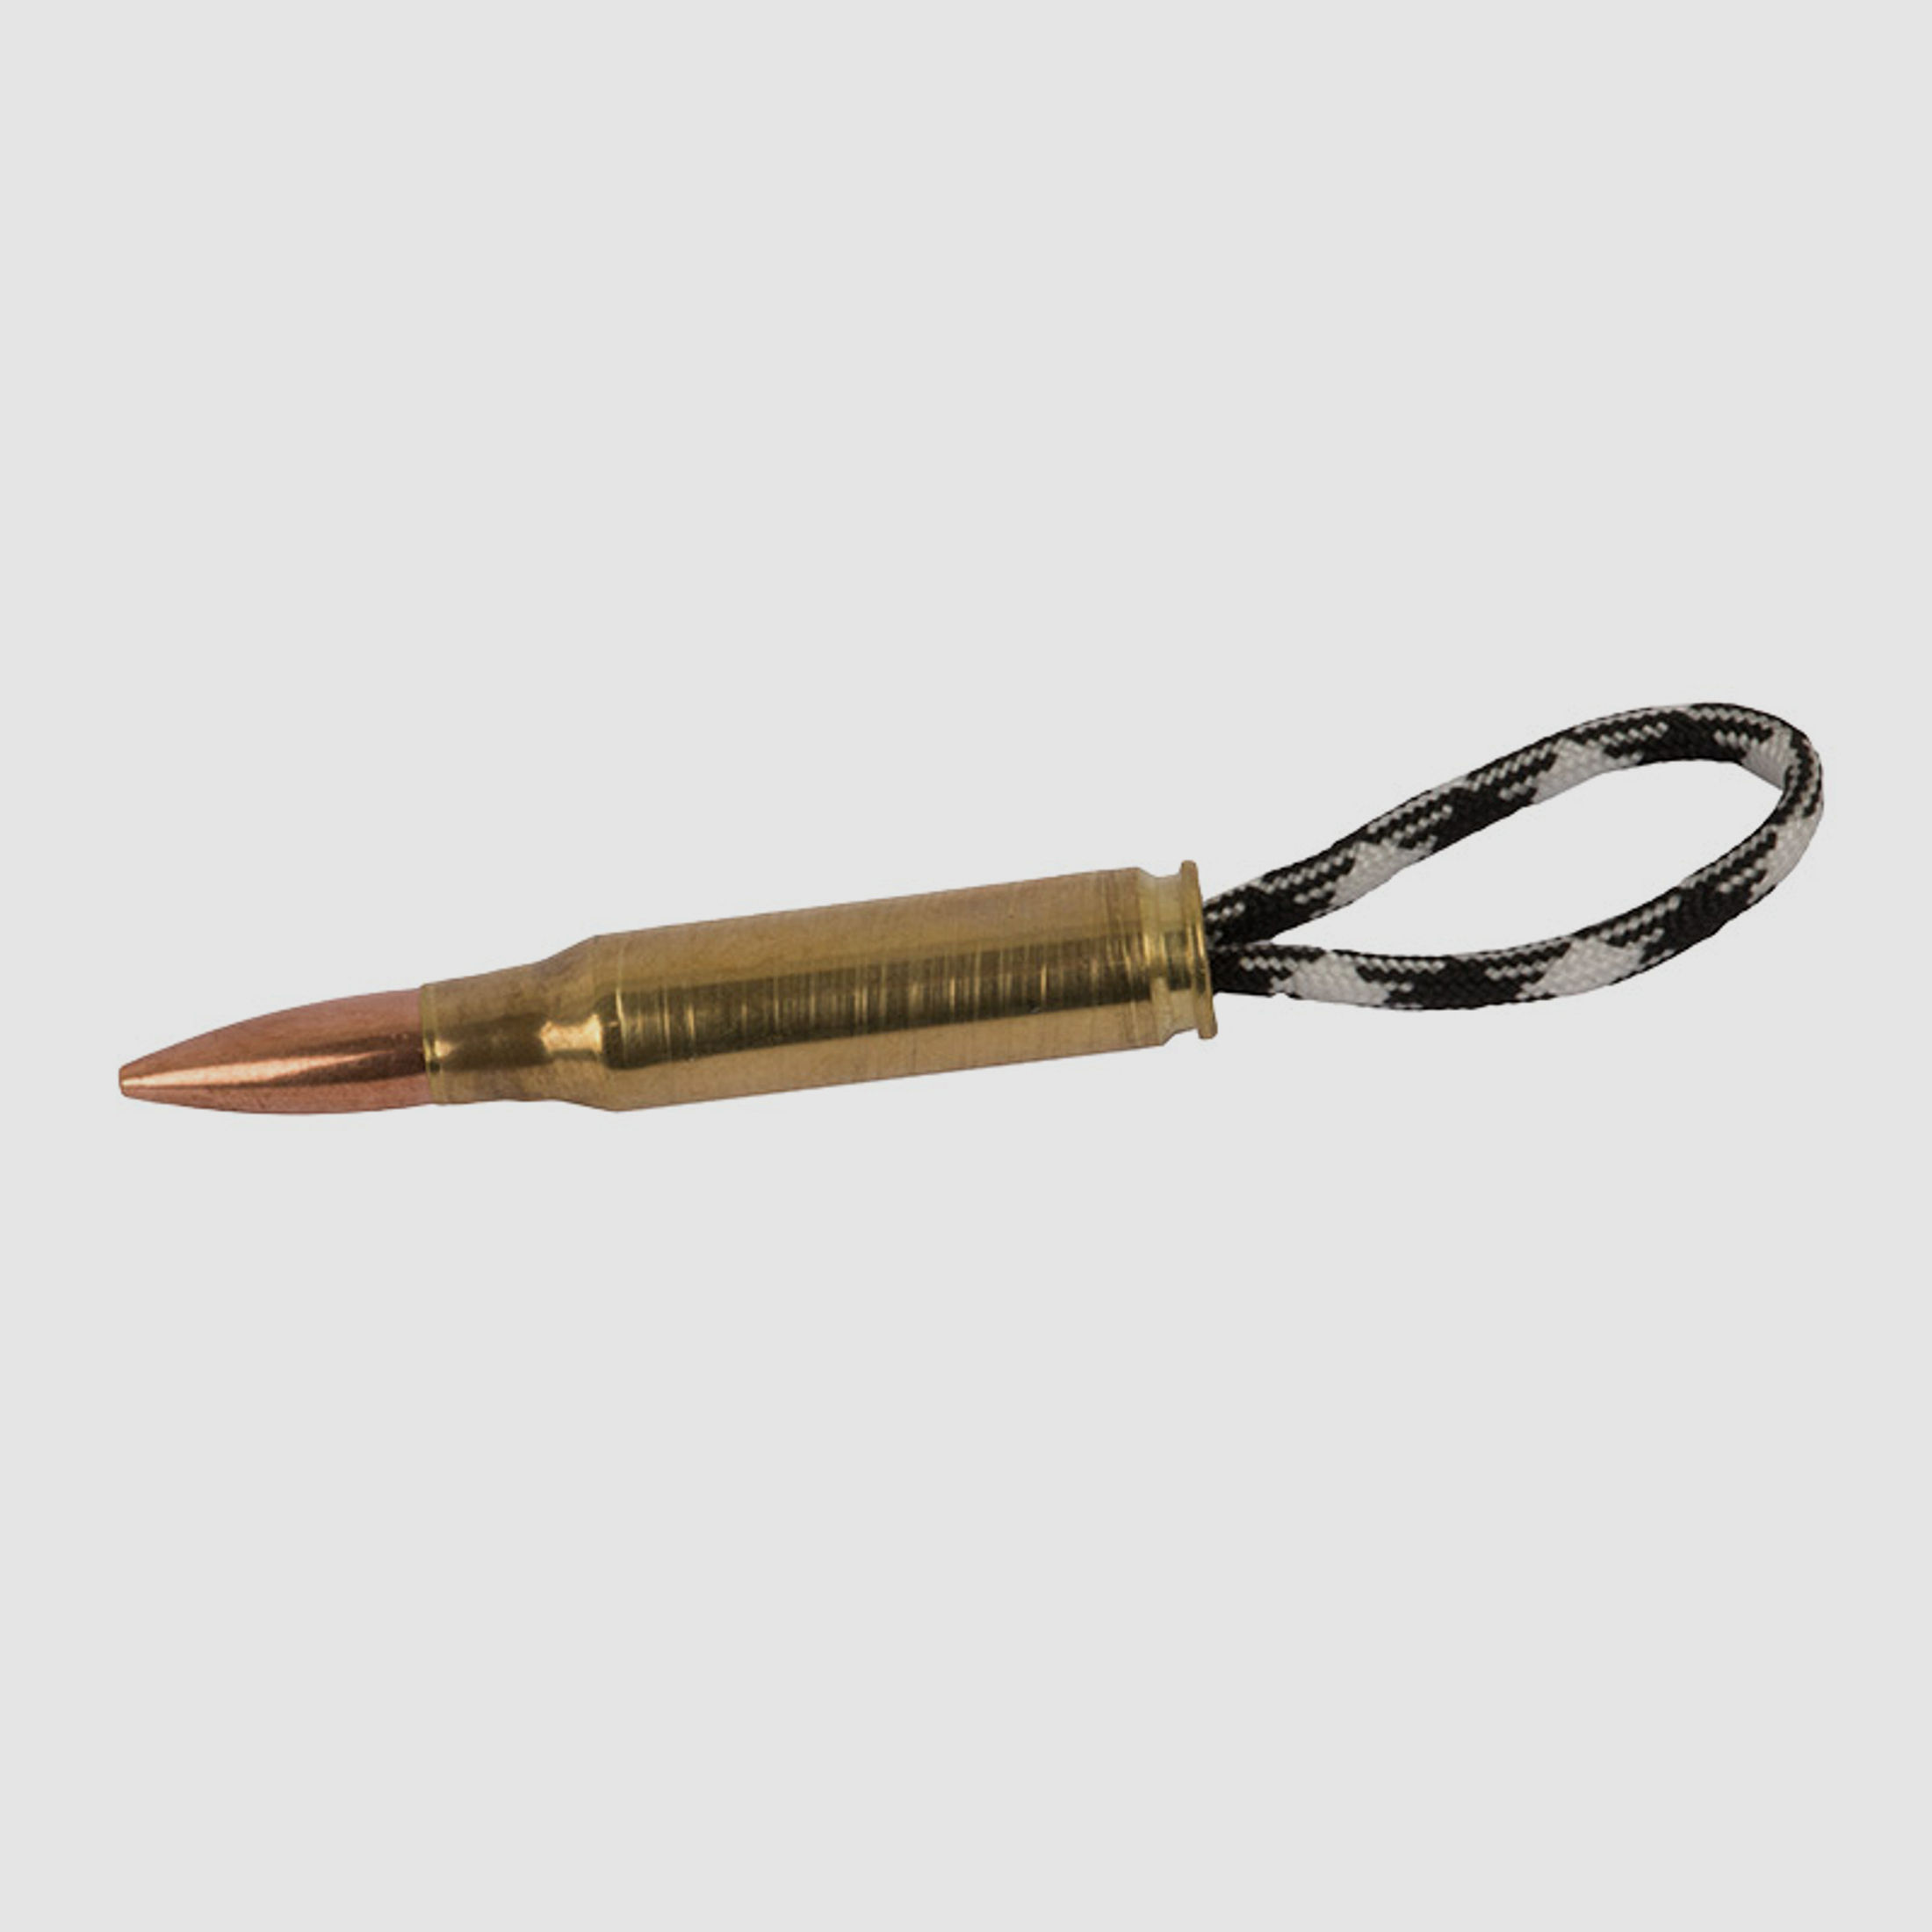 SchlĂĽsselanhĂ¤nger Parachute Cord mit Gewehrpatrone Kaliber 7,62 x 51 mm NATO .308 Winchester gemustert schwarz weiĂź handgefertigt